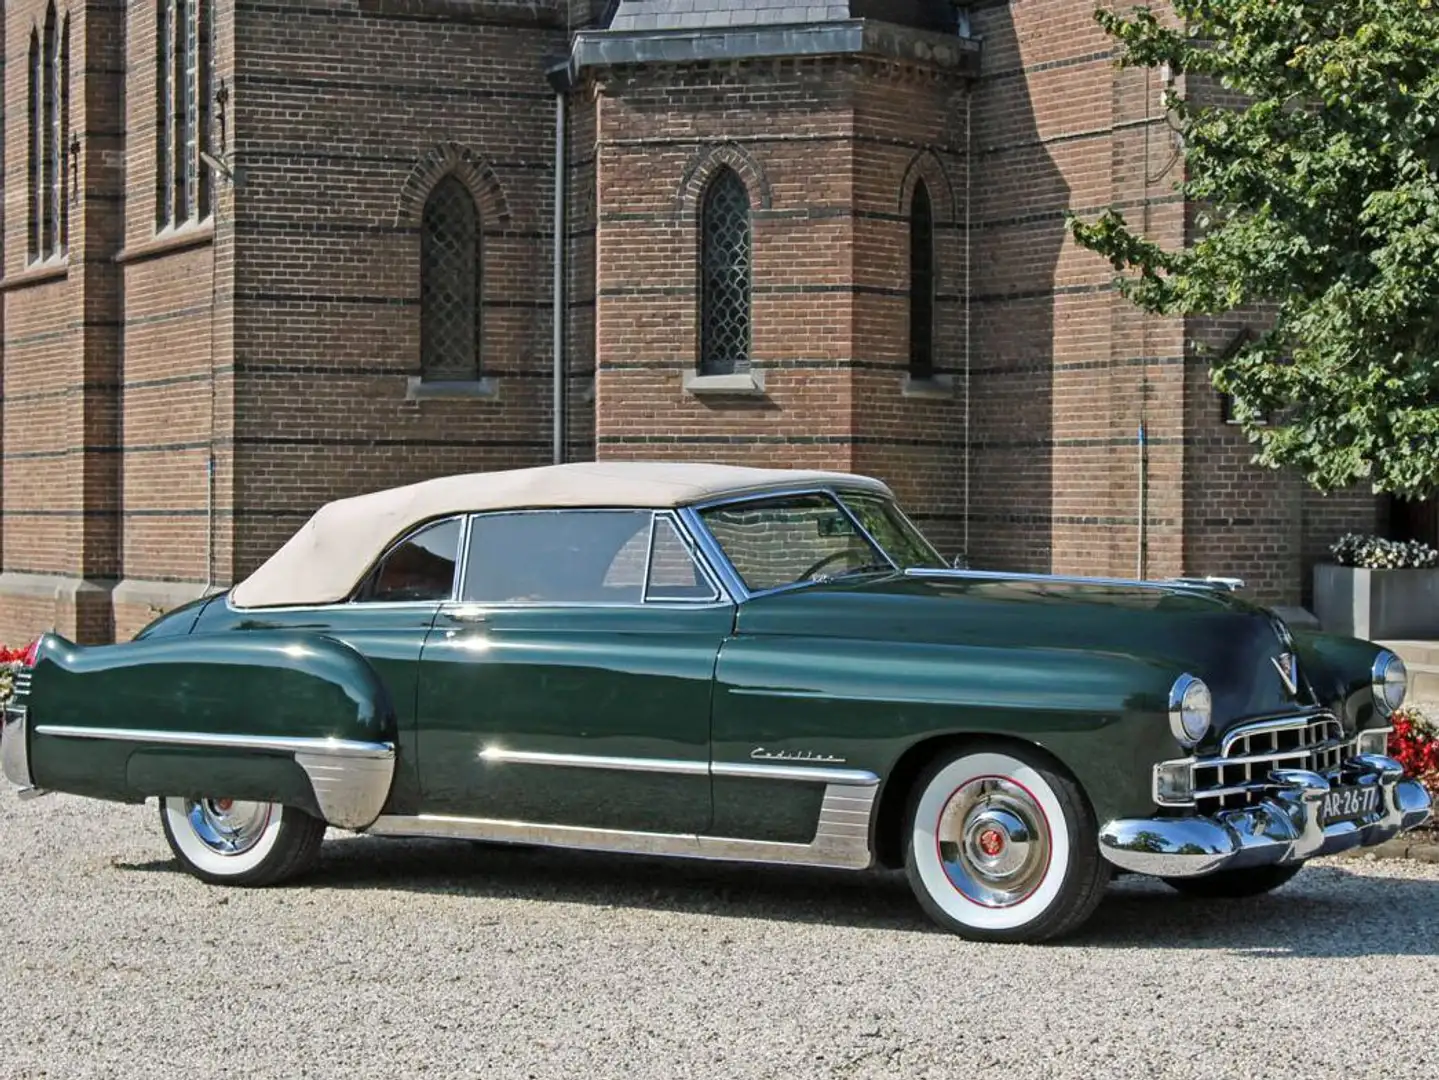 Cadillac Series 62 Convertible 1948 Green - 1